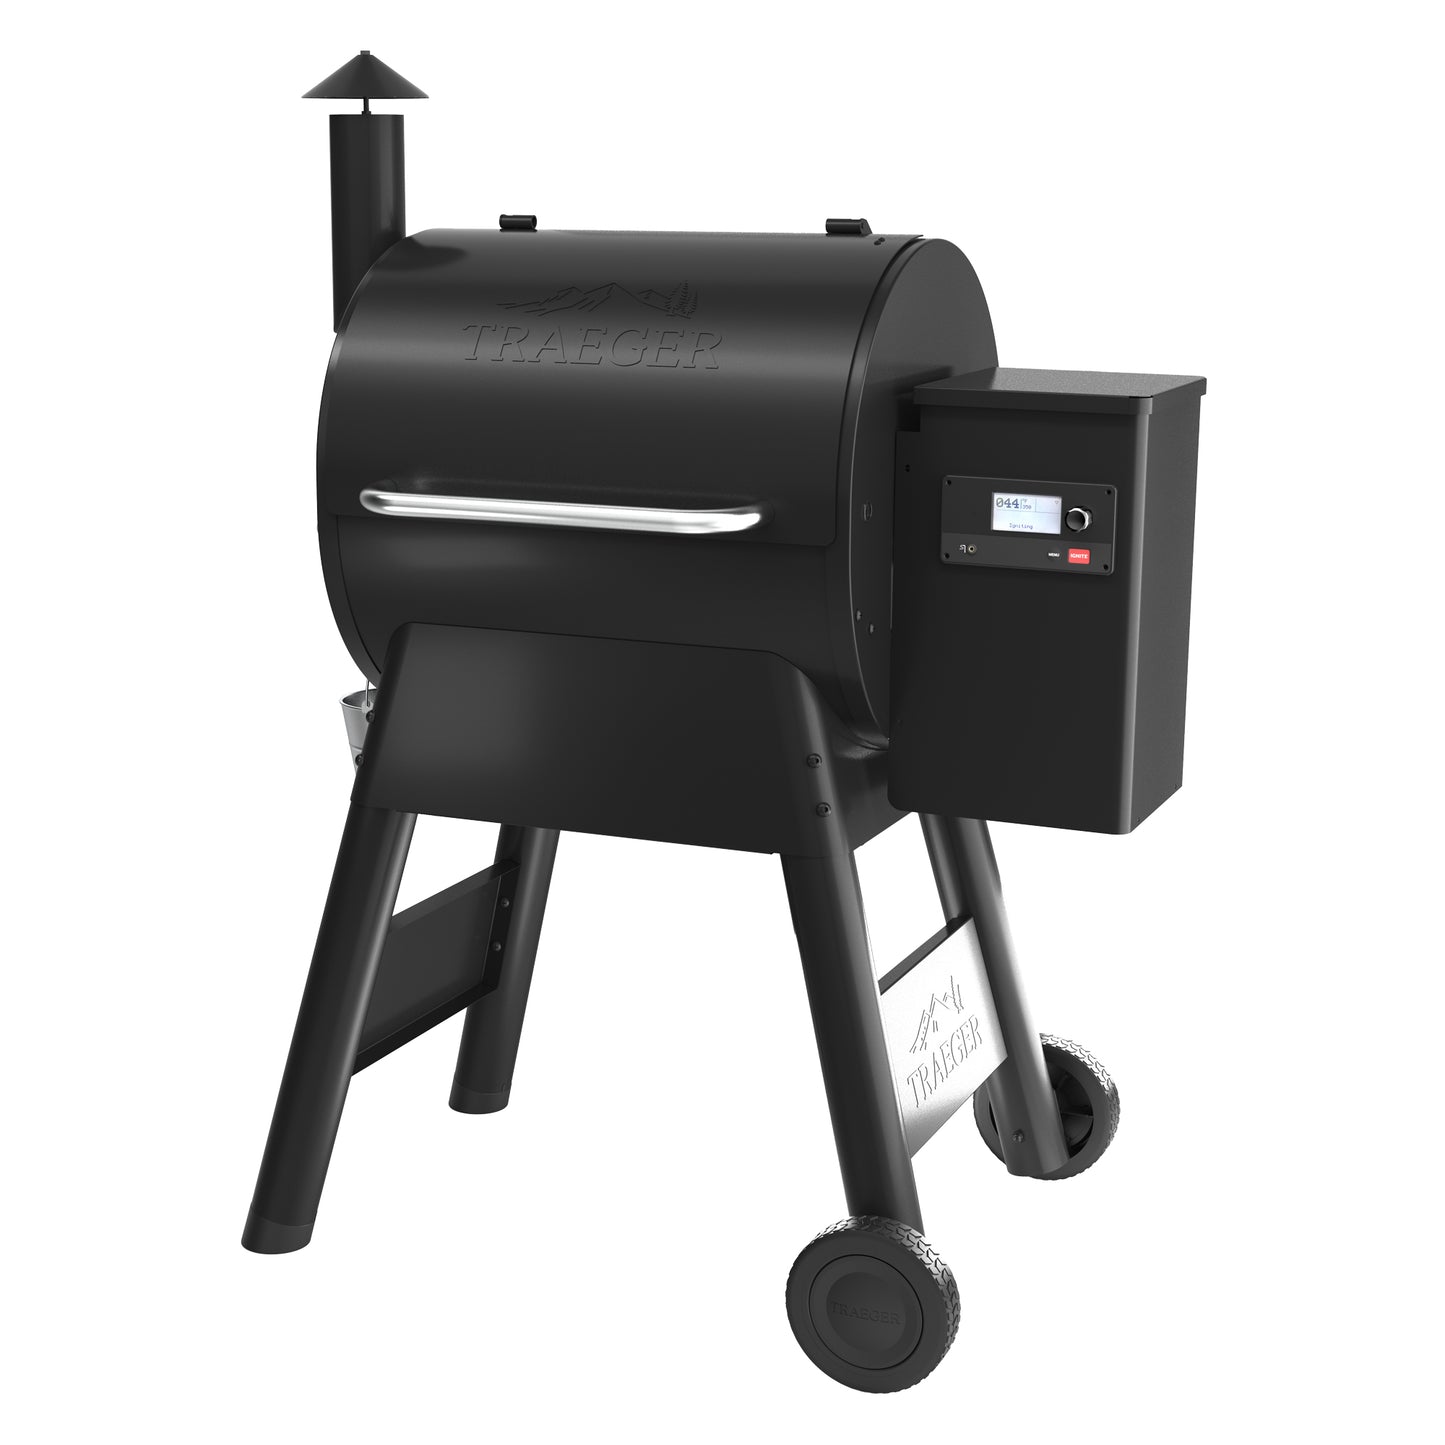 Traeger Pro 575 Wood Pellet Smoker/Grill